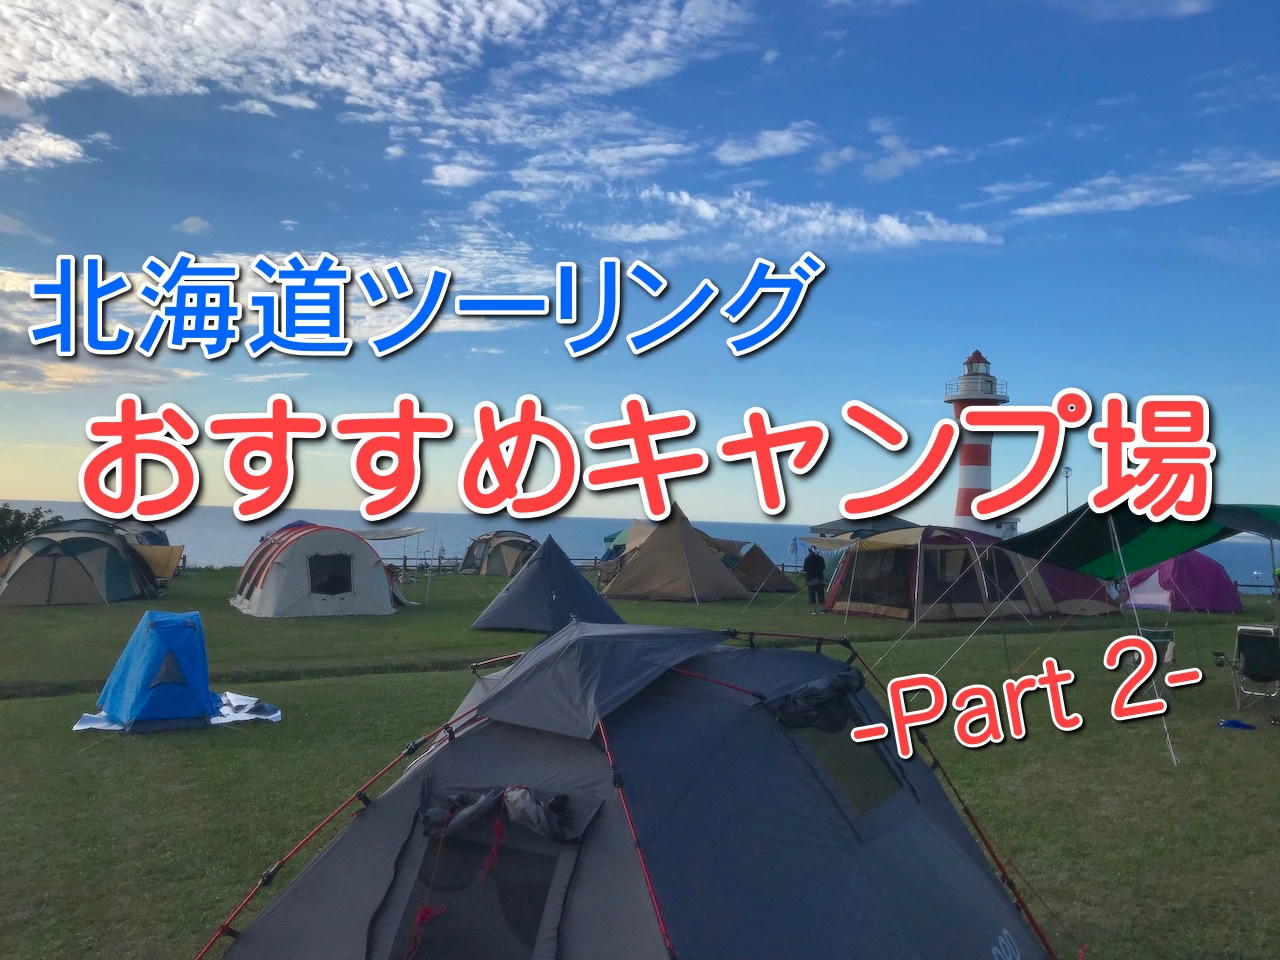 19年度版 北海道ツーリング おすすめキャンプ場ガイド Part2 Sasurider Com